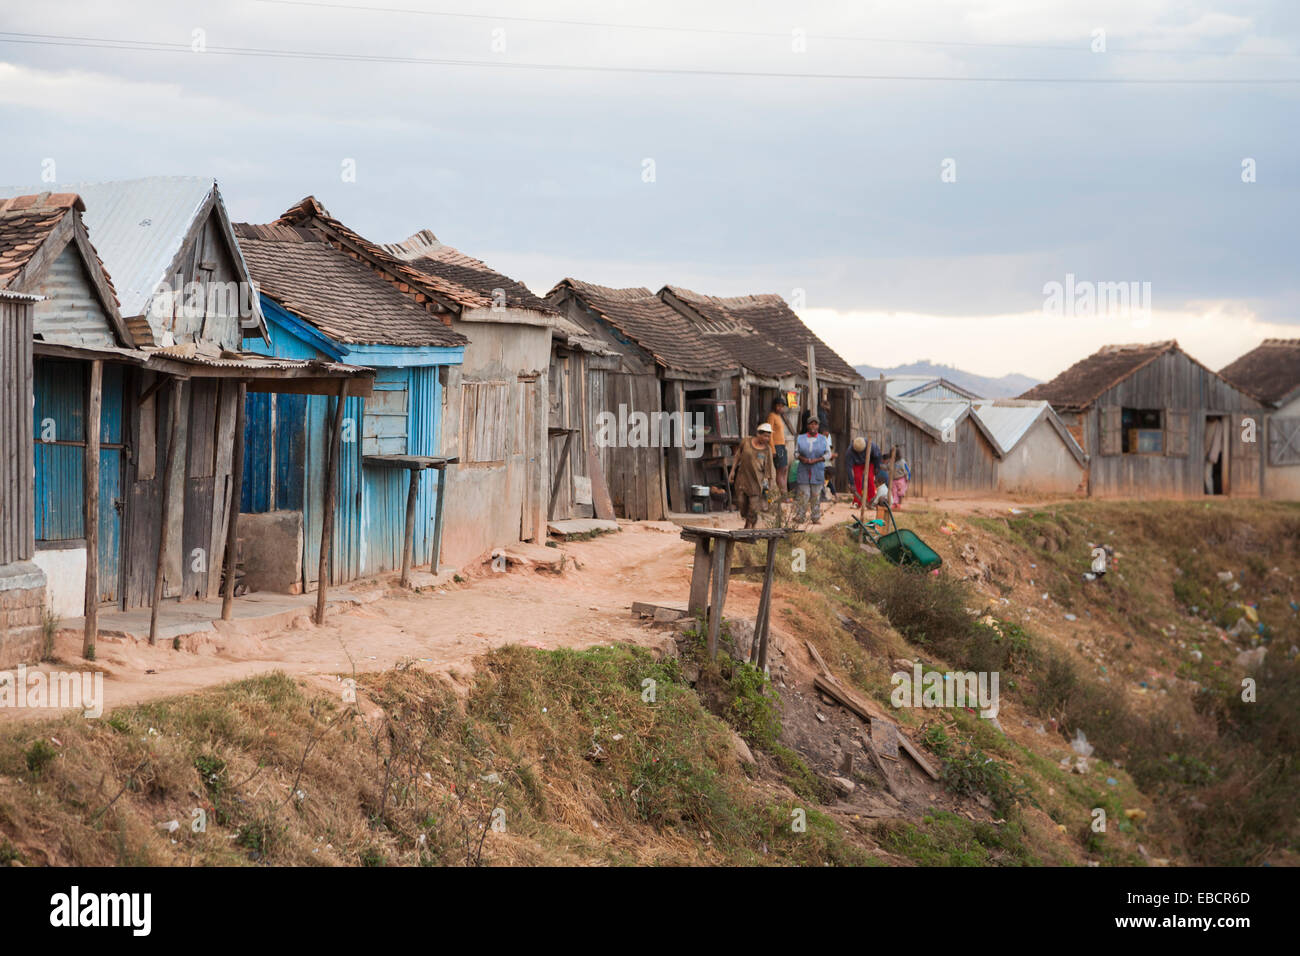 Tumbledown baraques de bois dans un bidonville à la périphérie d'Antananarivo, ou Tana, capitale de Madagascar Banque D'Images